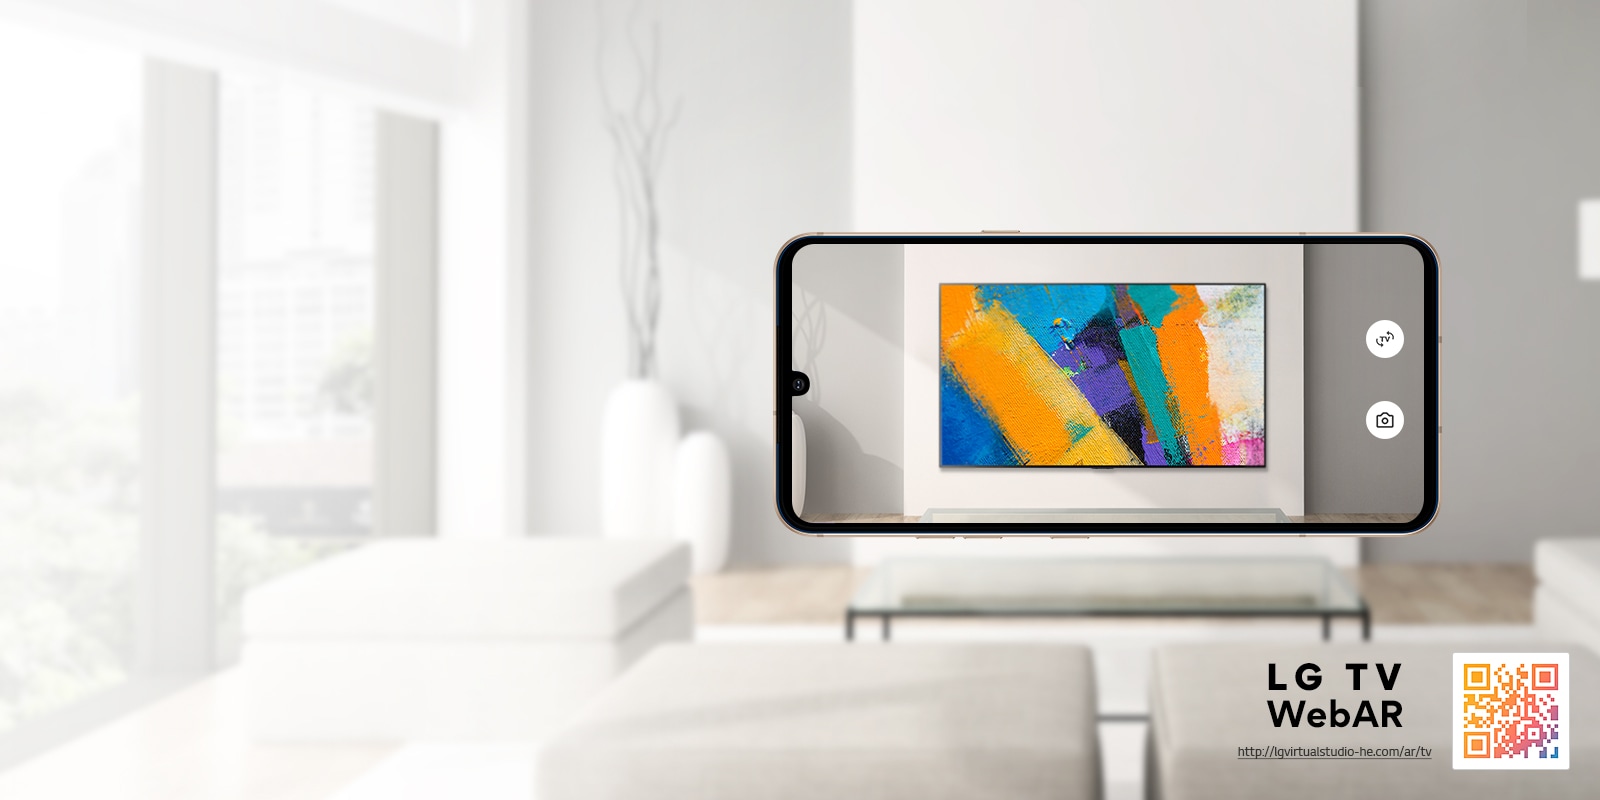 Ovo je simulacijska slika proširene stvarnosti televizora LG OLED za web. Slike mobilnih telefona preklapaju se u minimalističkom prostoru. U donjem desnom kutu nalazi se QR kôd.